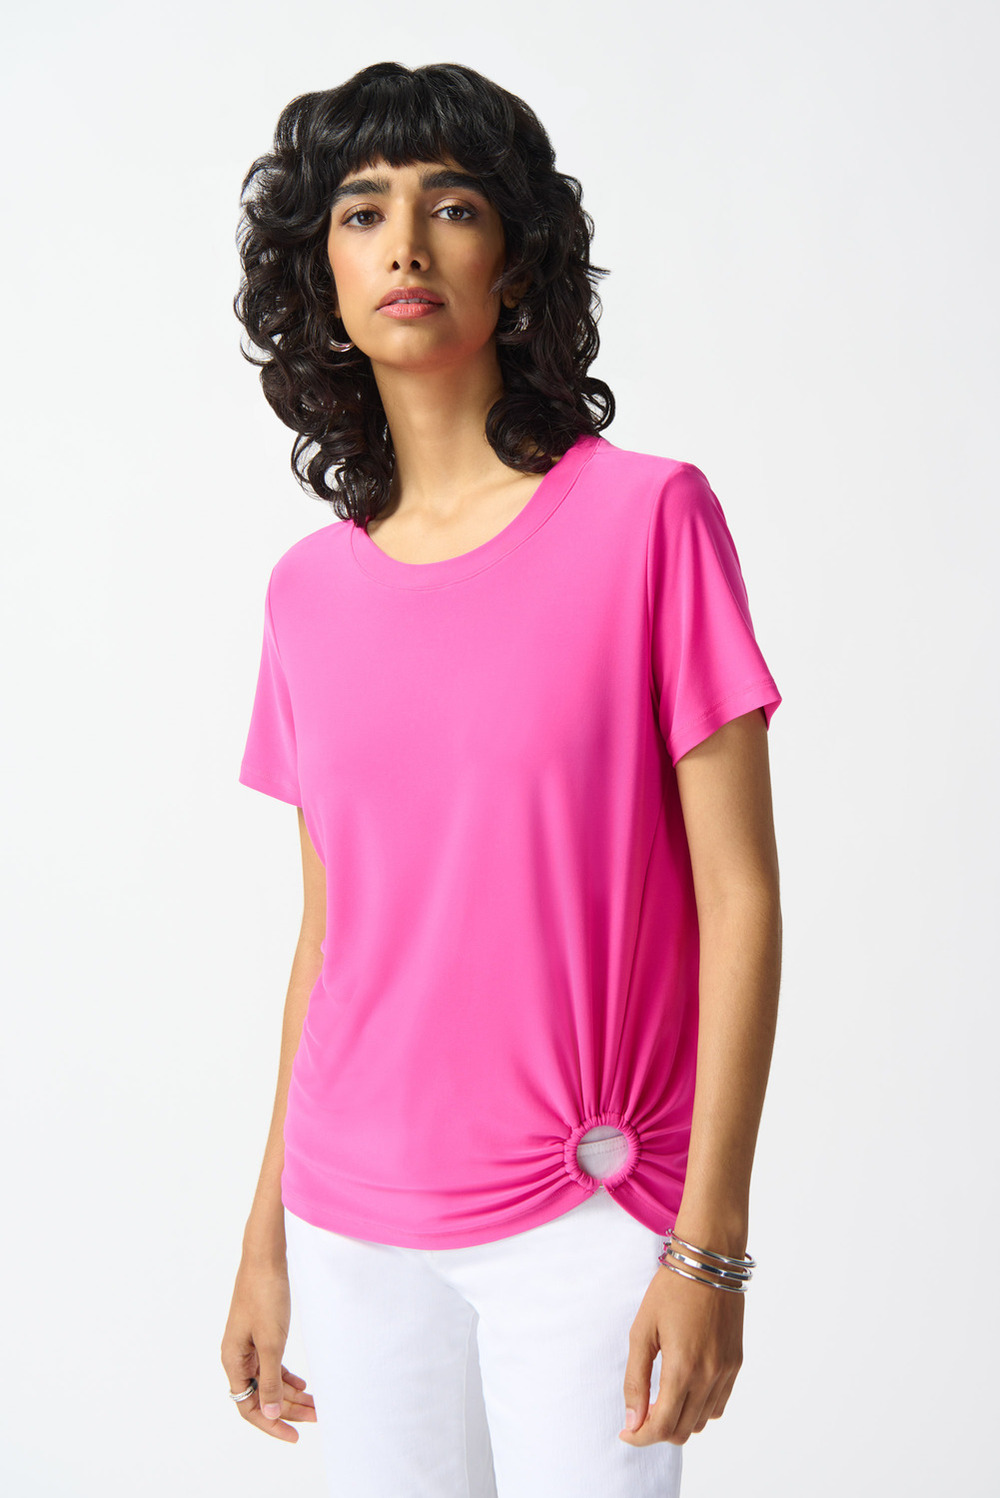 T-shirt, boucle à fronces modèle 242199. Ultra Pink